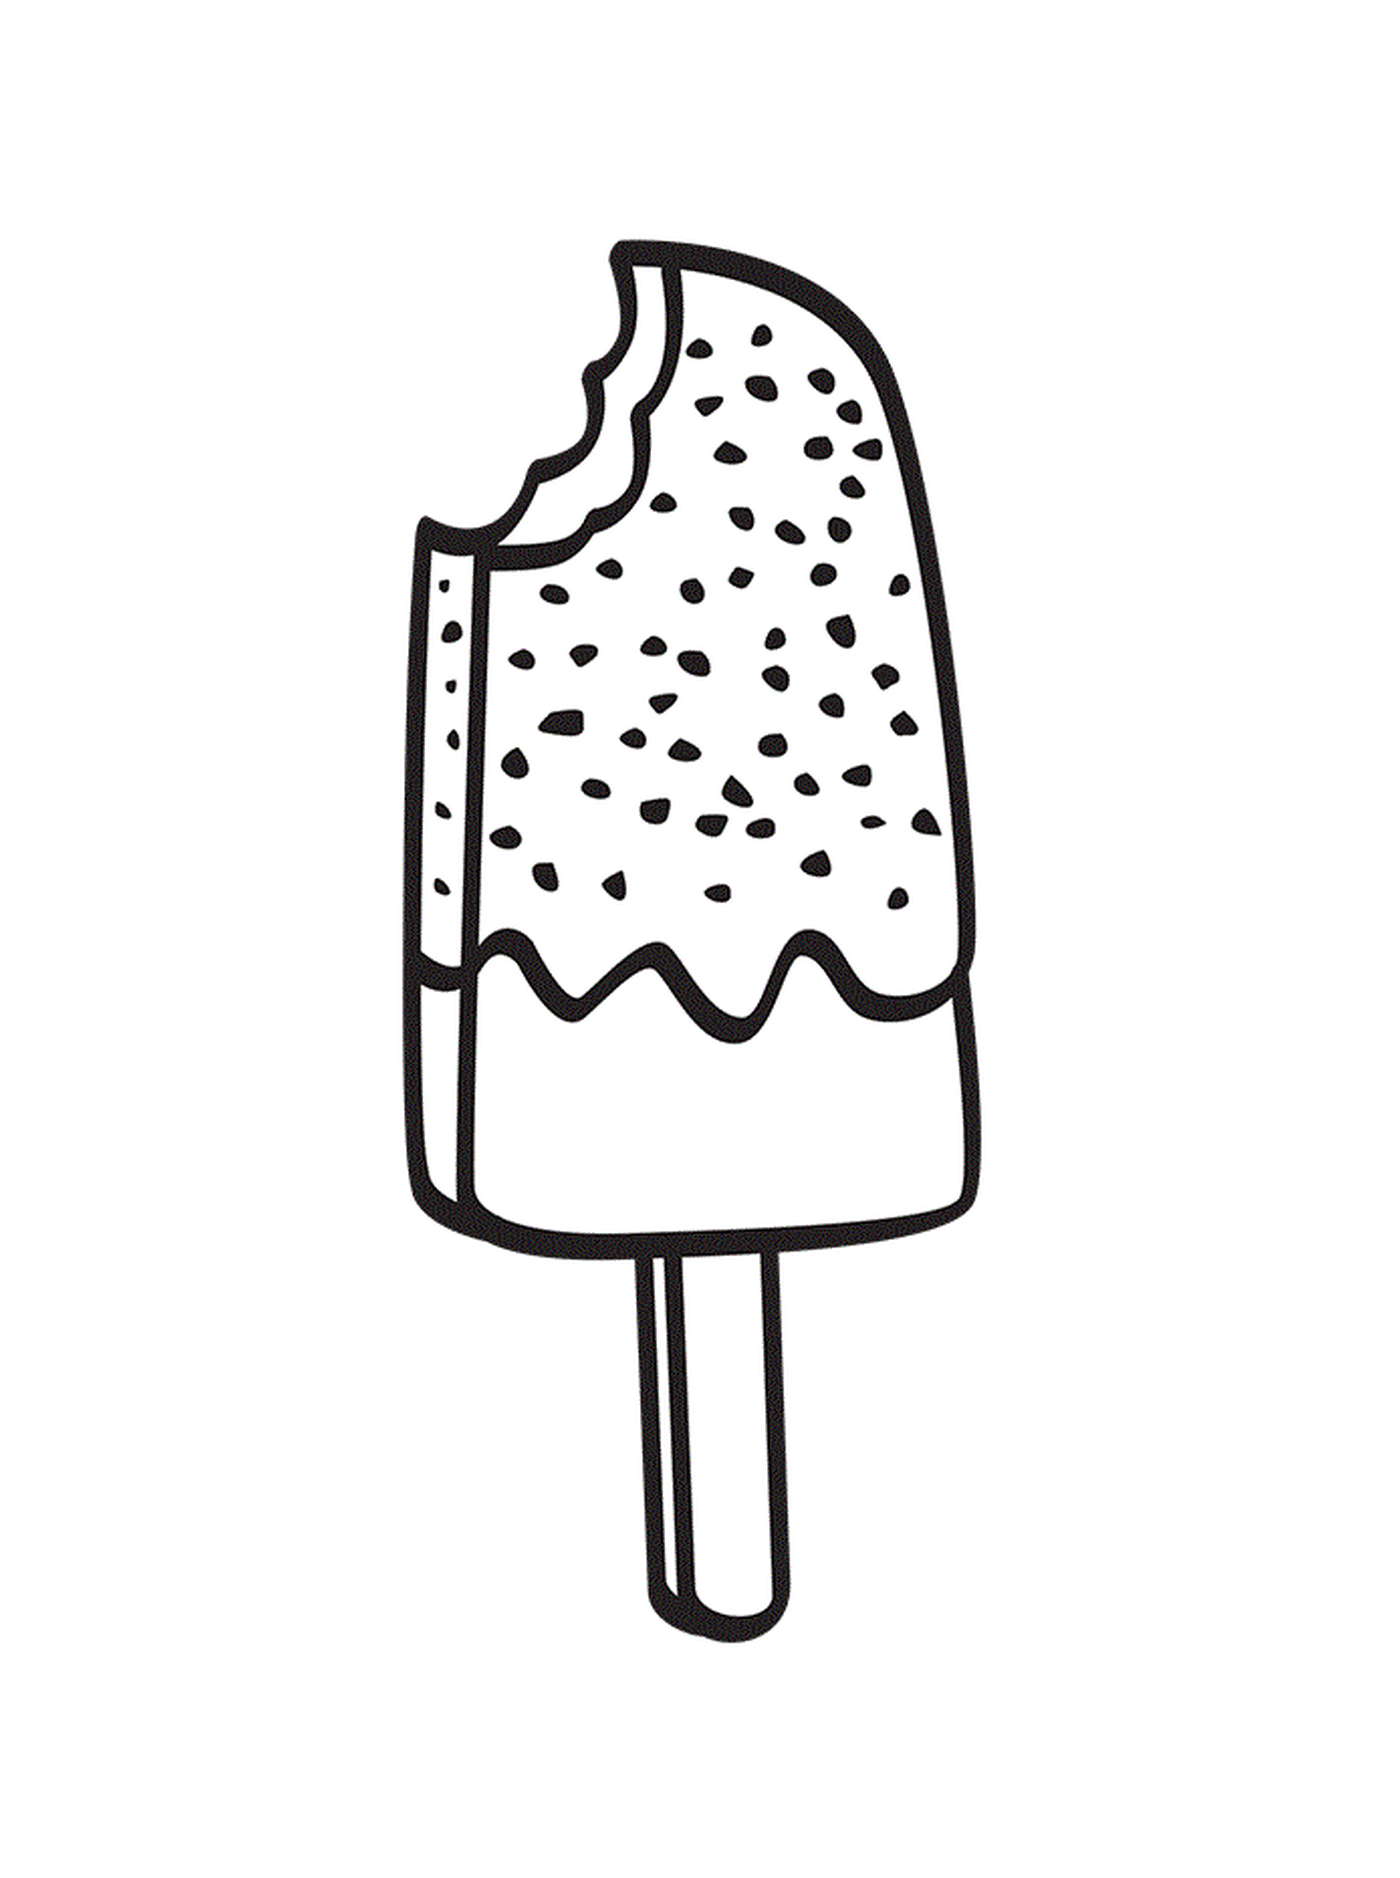  暑暑假时 奶油冰淇淋加在棍子上的奶油冰淇淋 